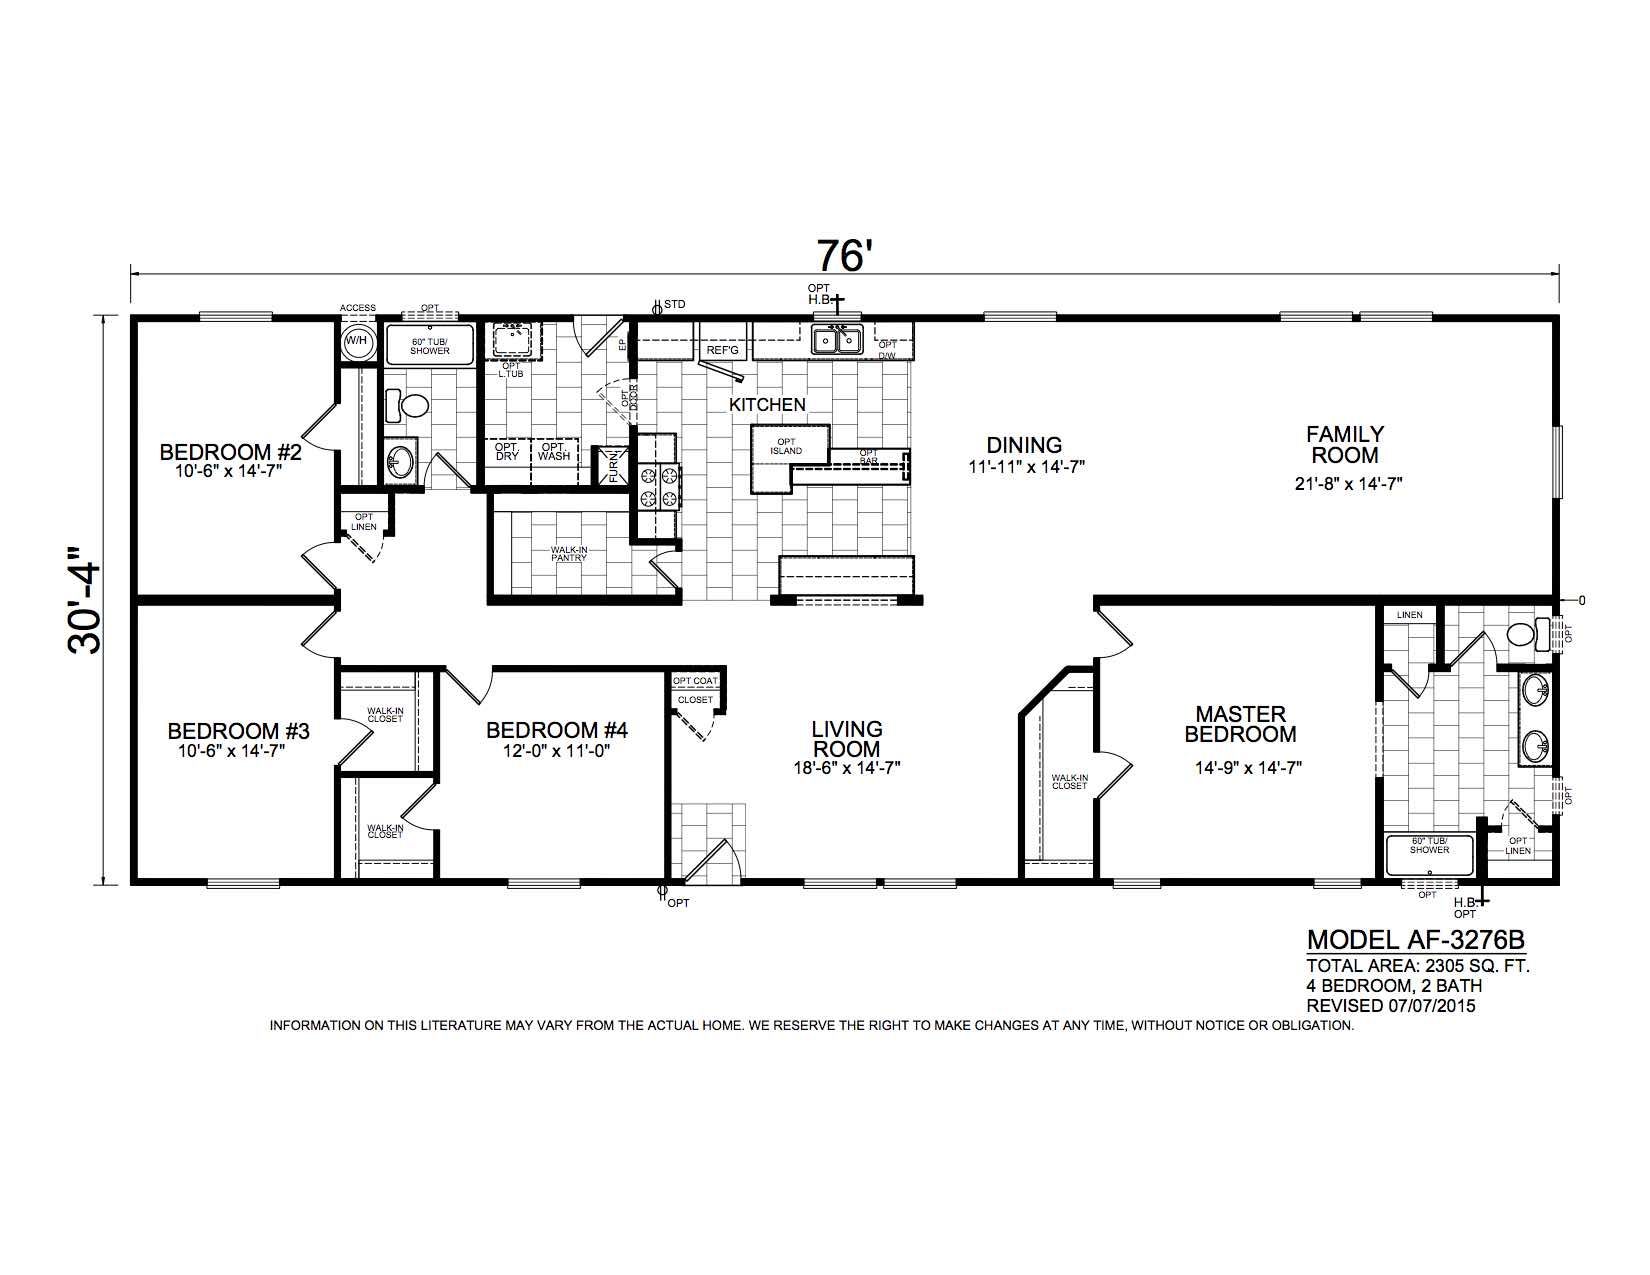 Homes Direct Modular Homes - Model AF3276B - Floorplan